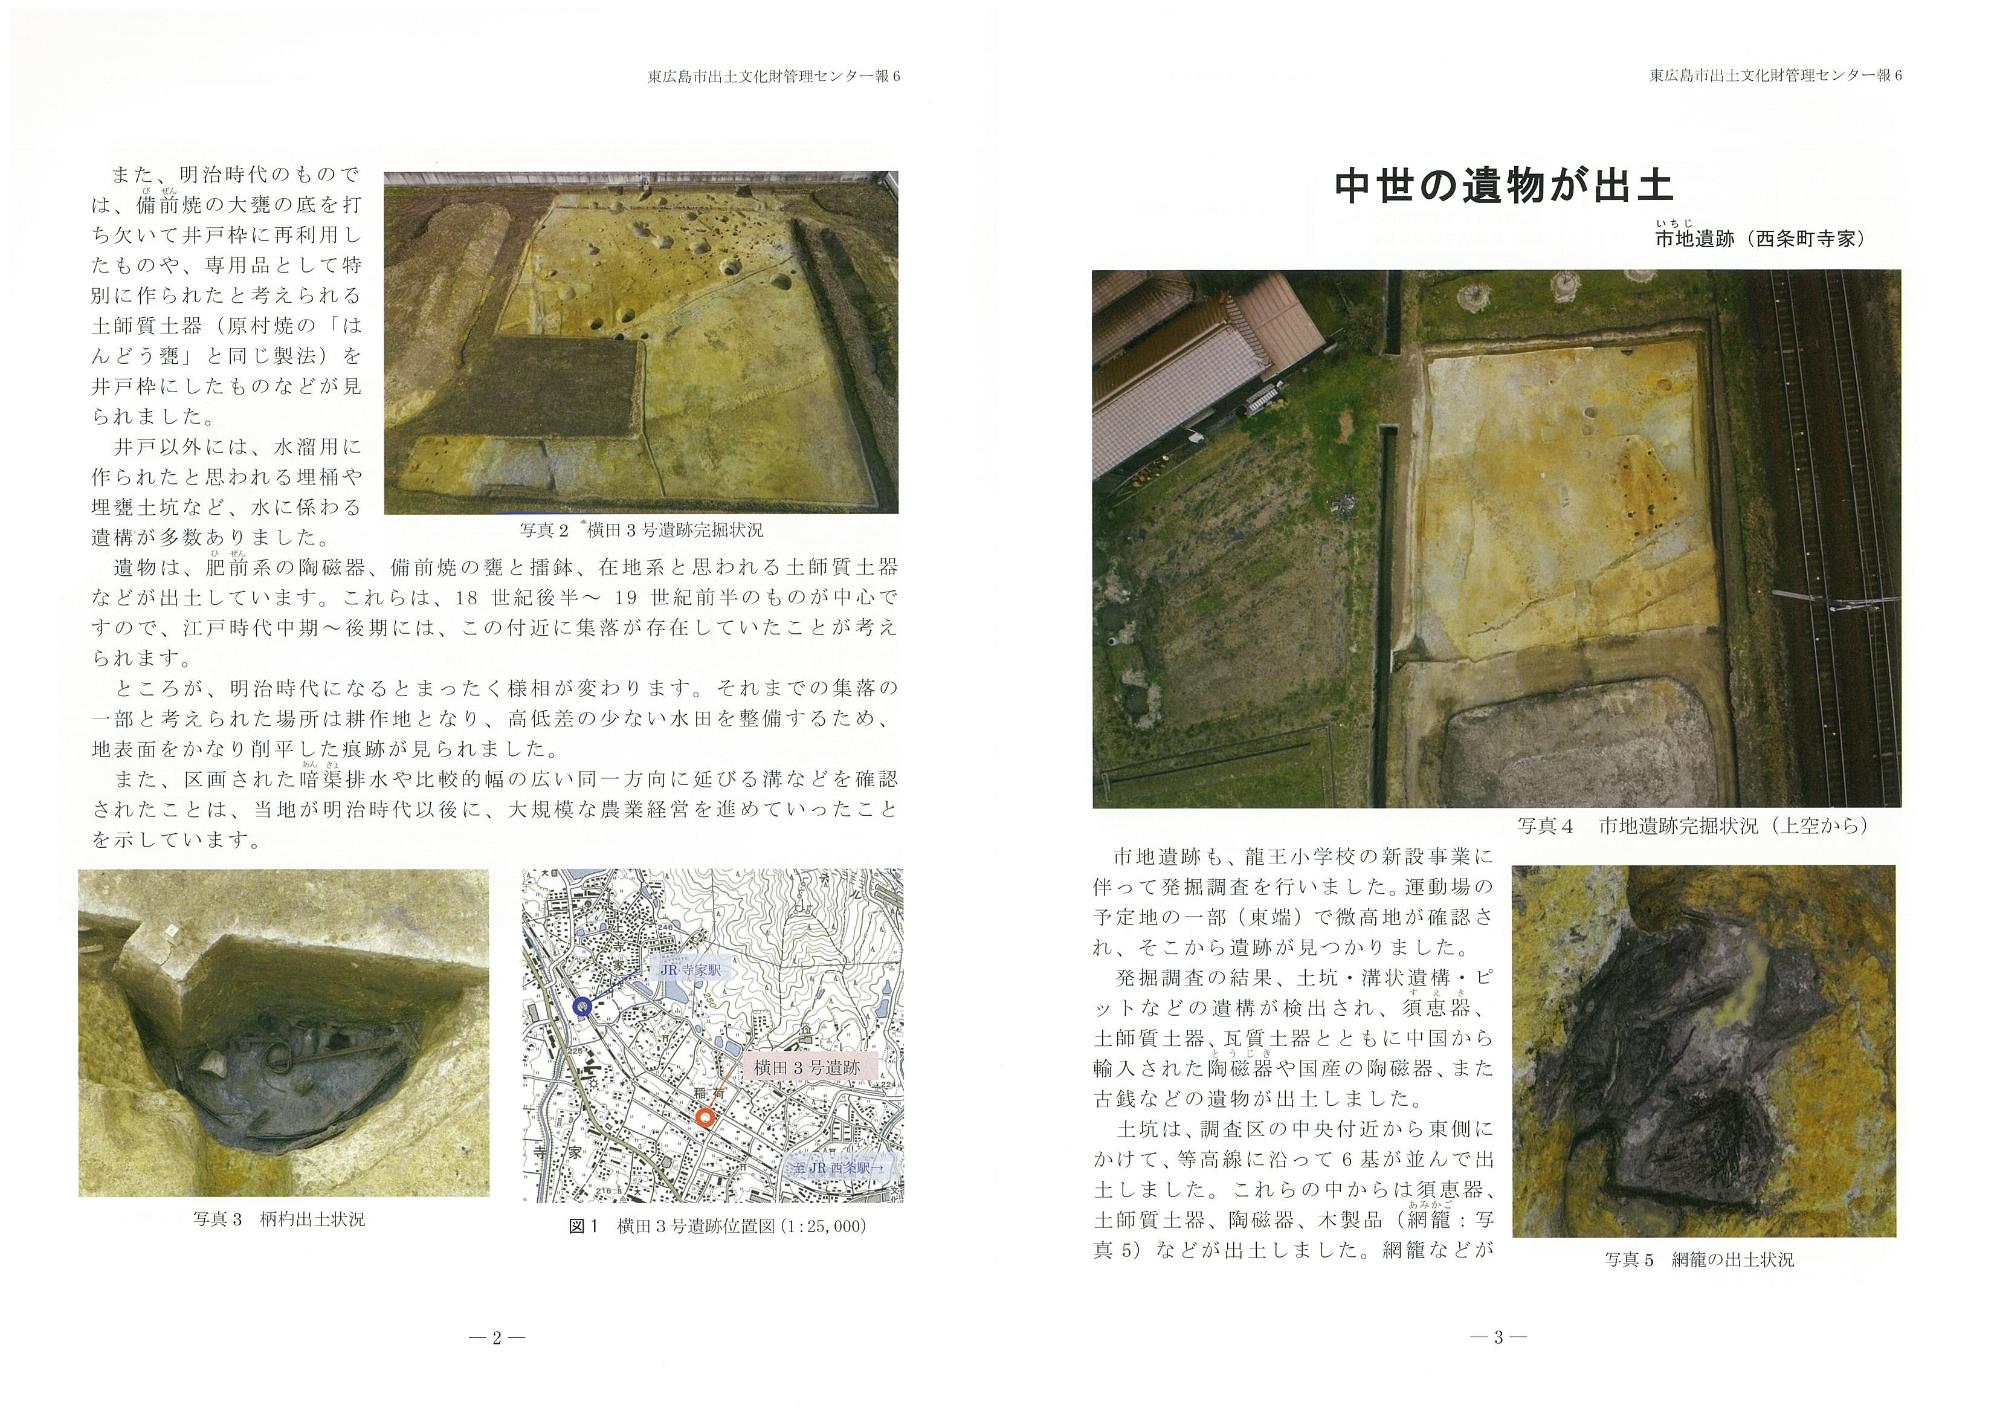 東広島市出土文化財管理センター報『東ひろしまの遺跡』6の写真2